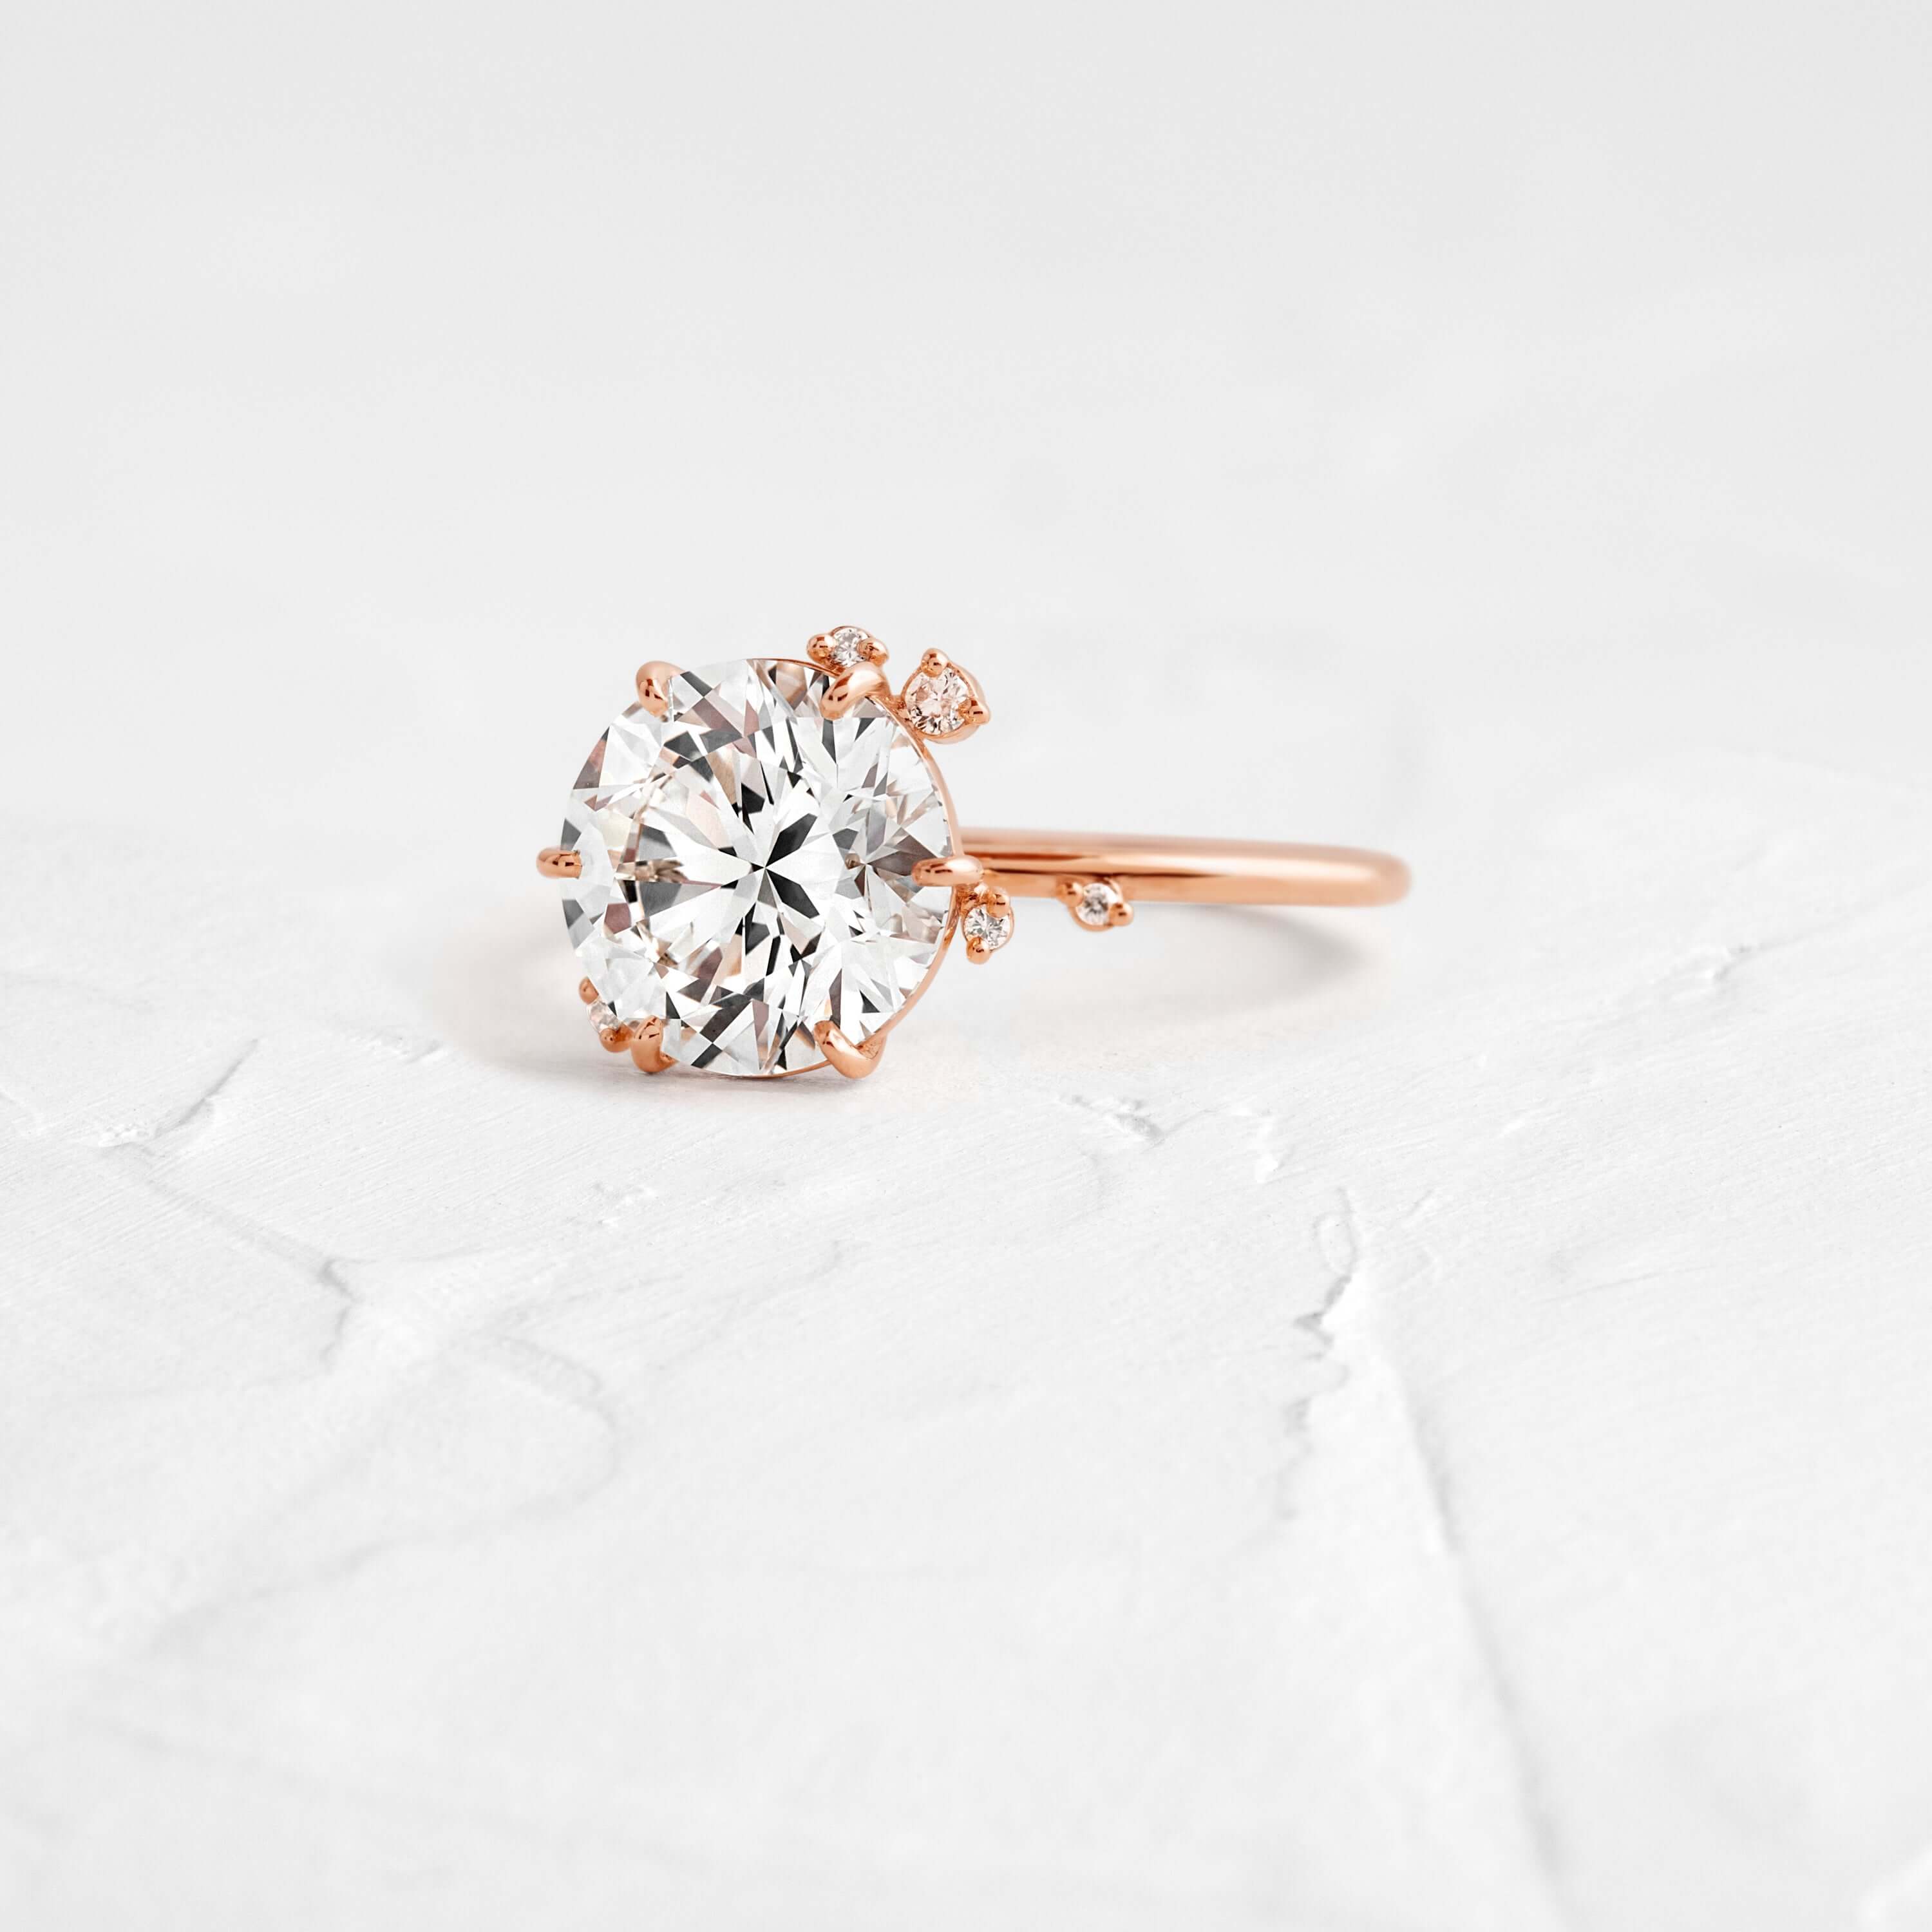 To A Flame Ring, Round Diamond | Melanie Casey Fine Jewelry